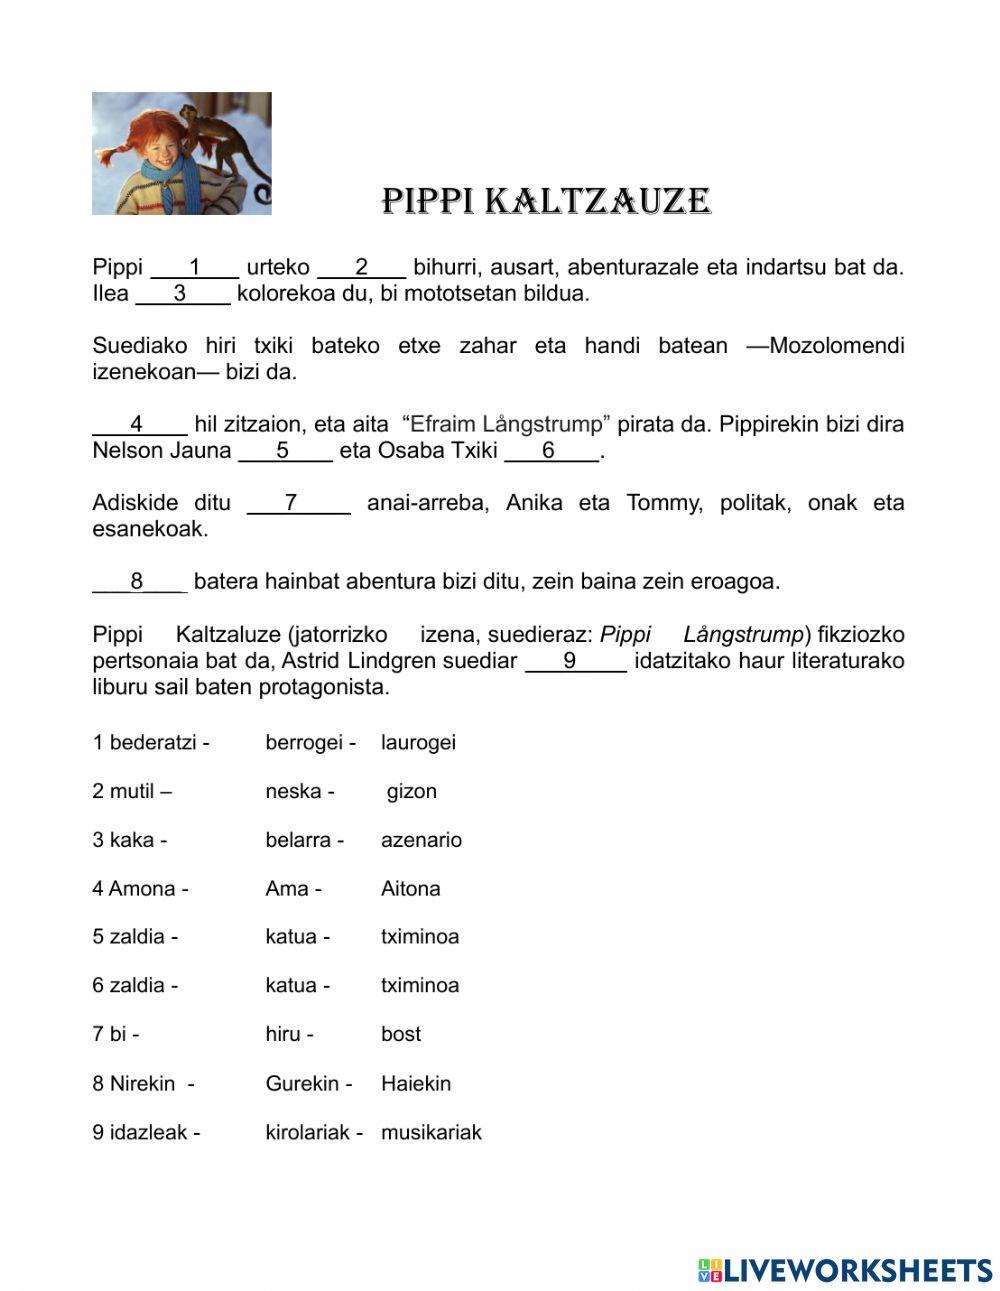 Pippi Kaltzaluze